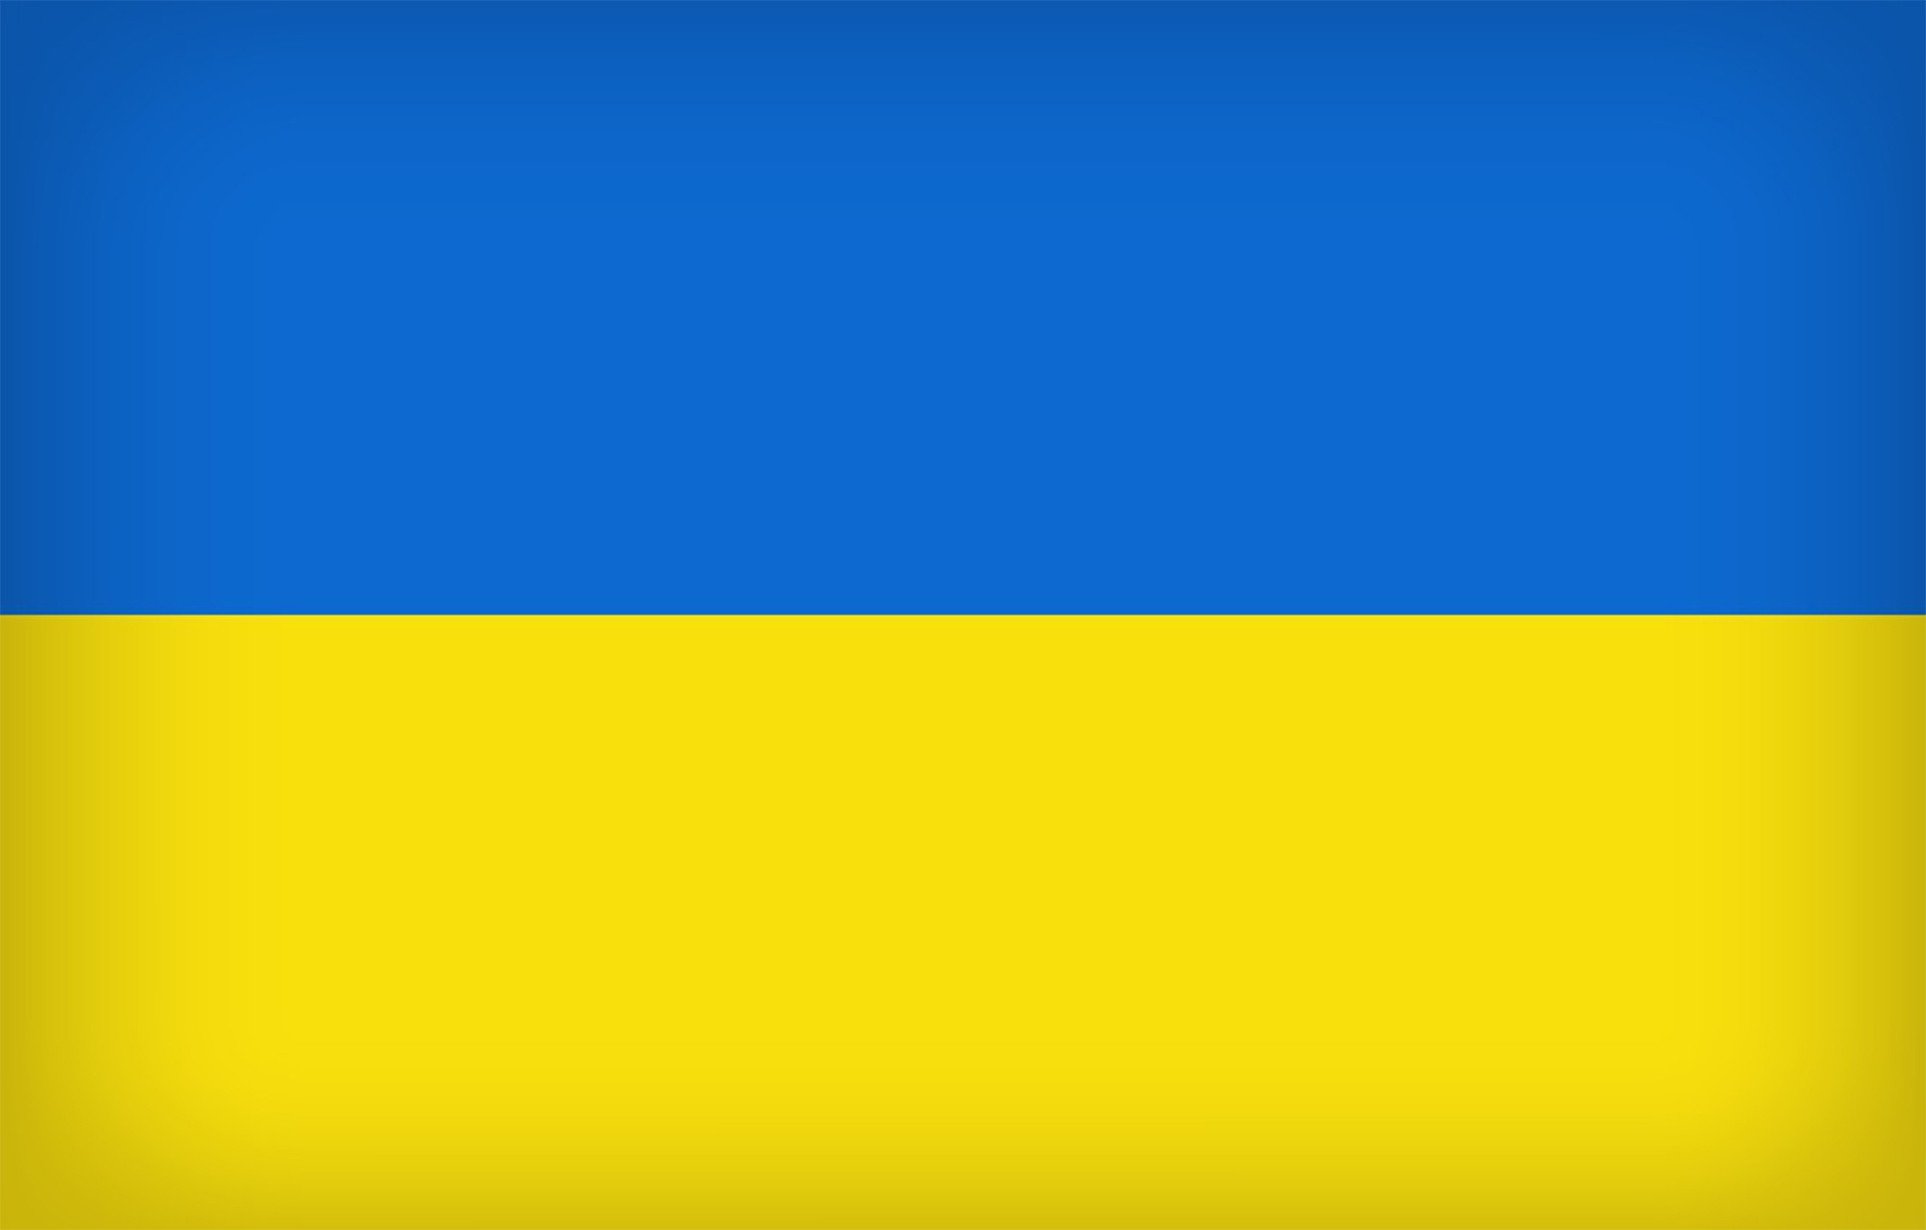 Channeled messages regarding Ukraine